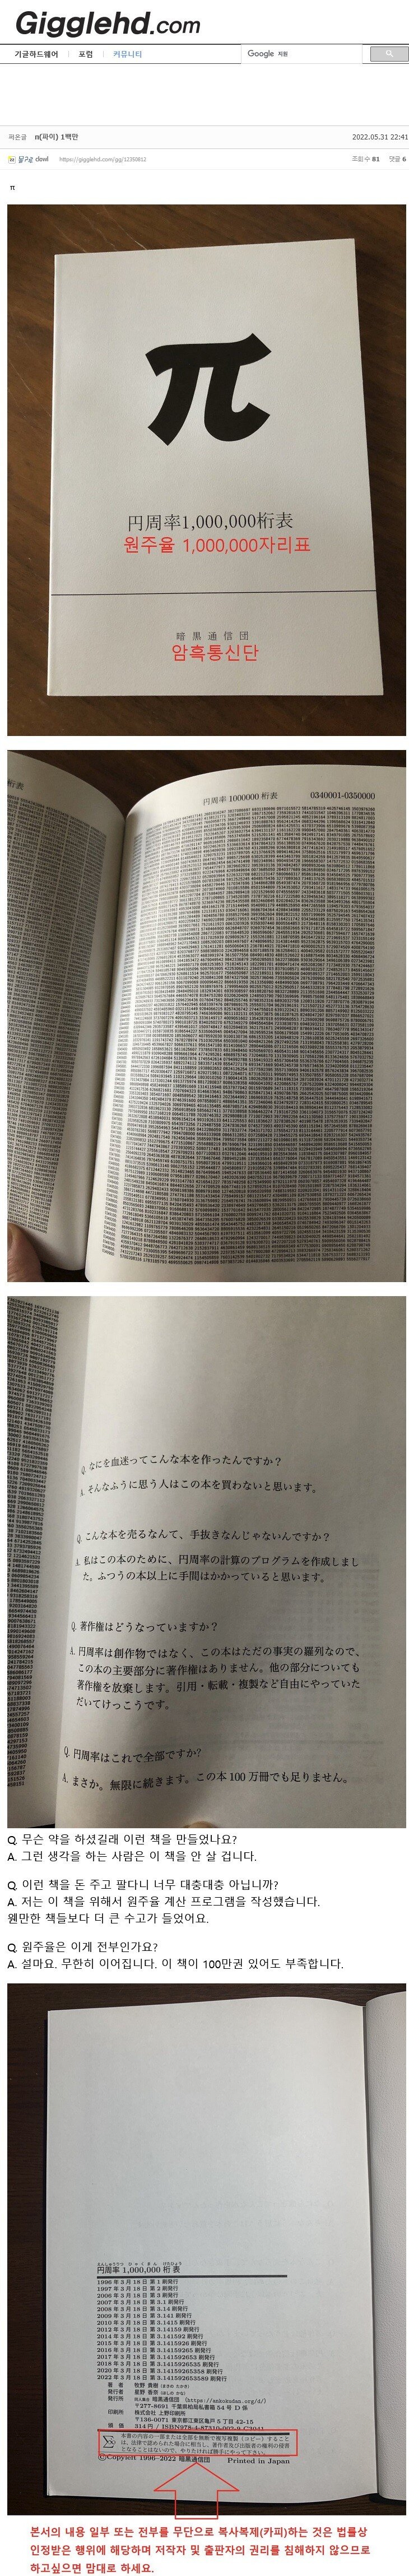 일본에서 26년동안 출판 되는 찐광기 책